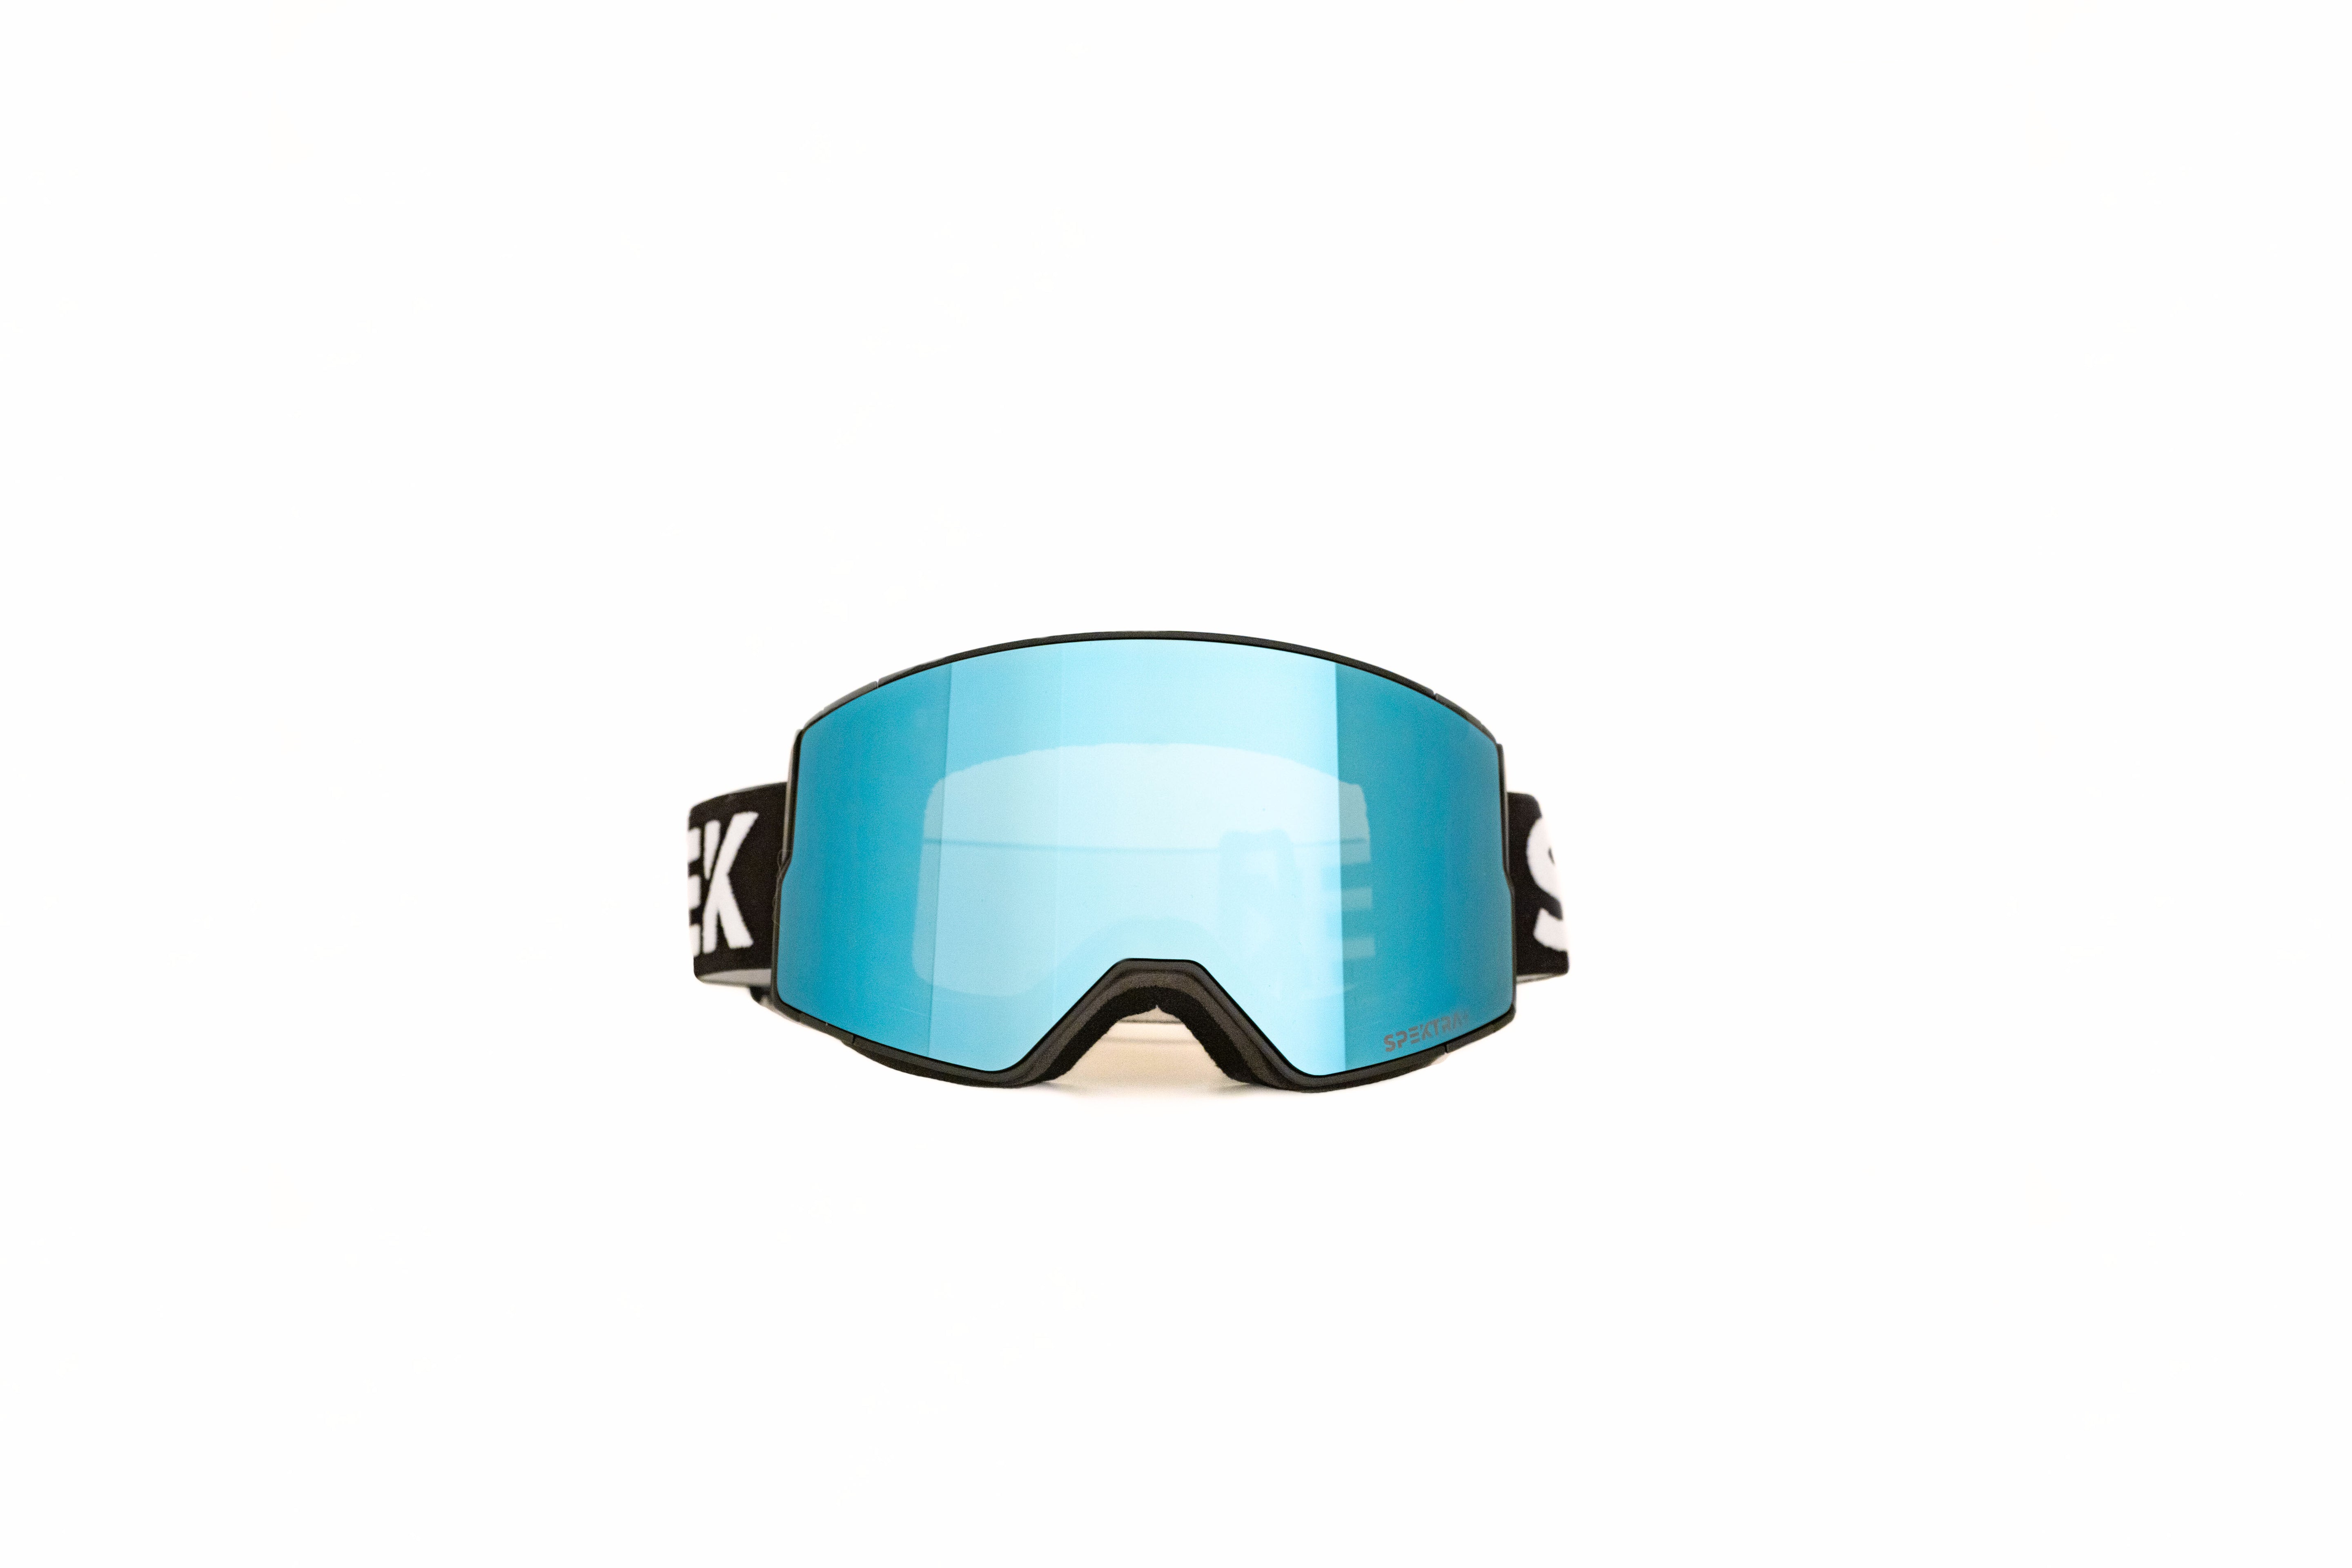 EDGE ski goggles